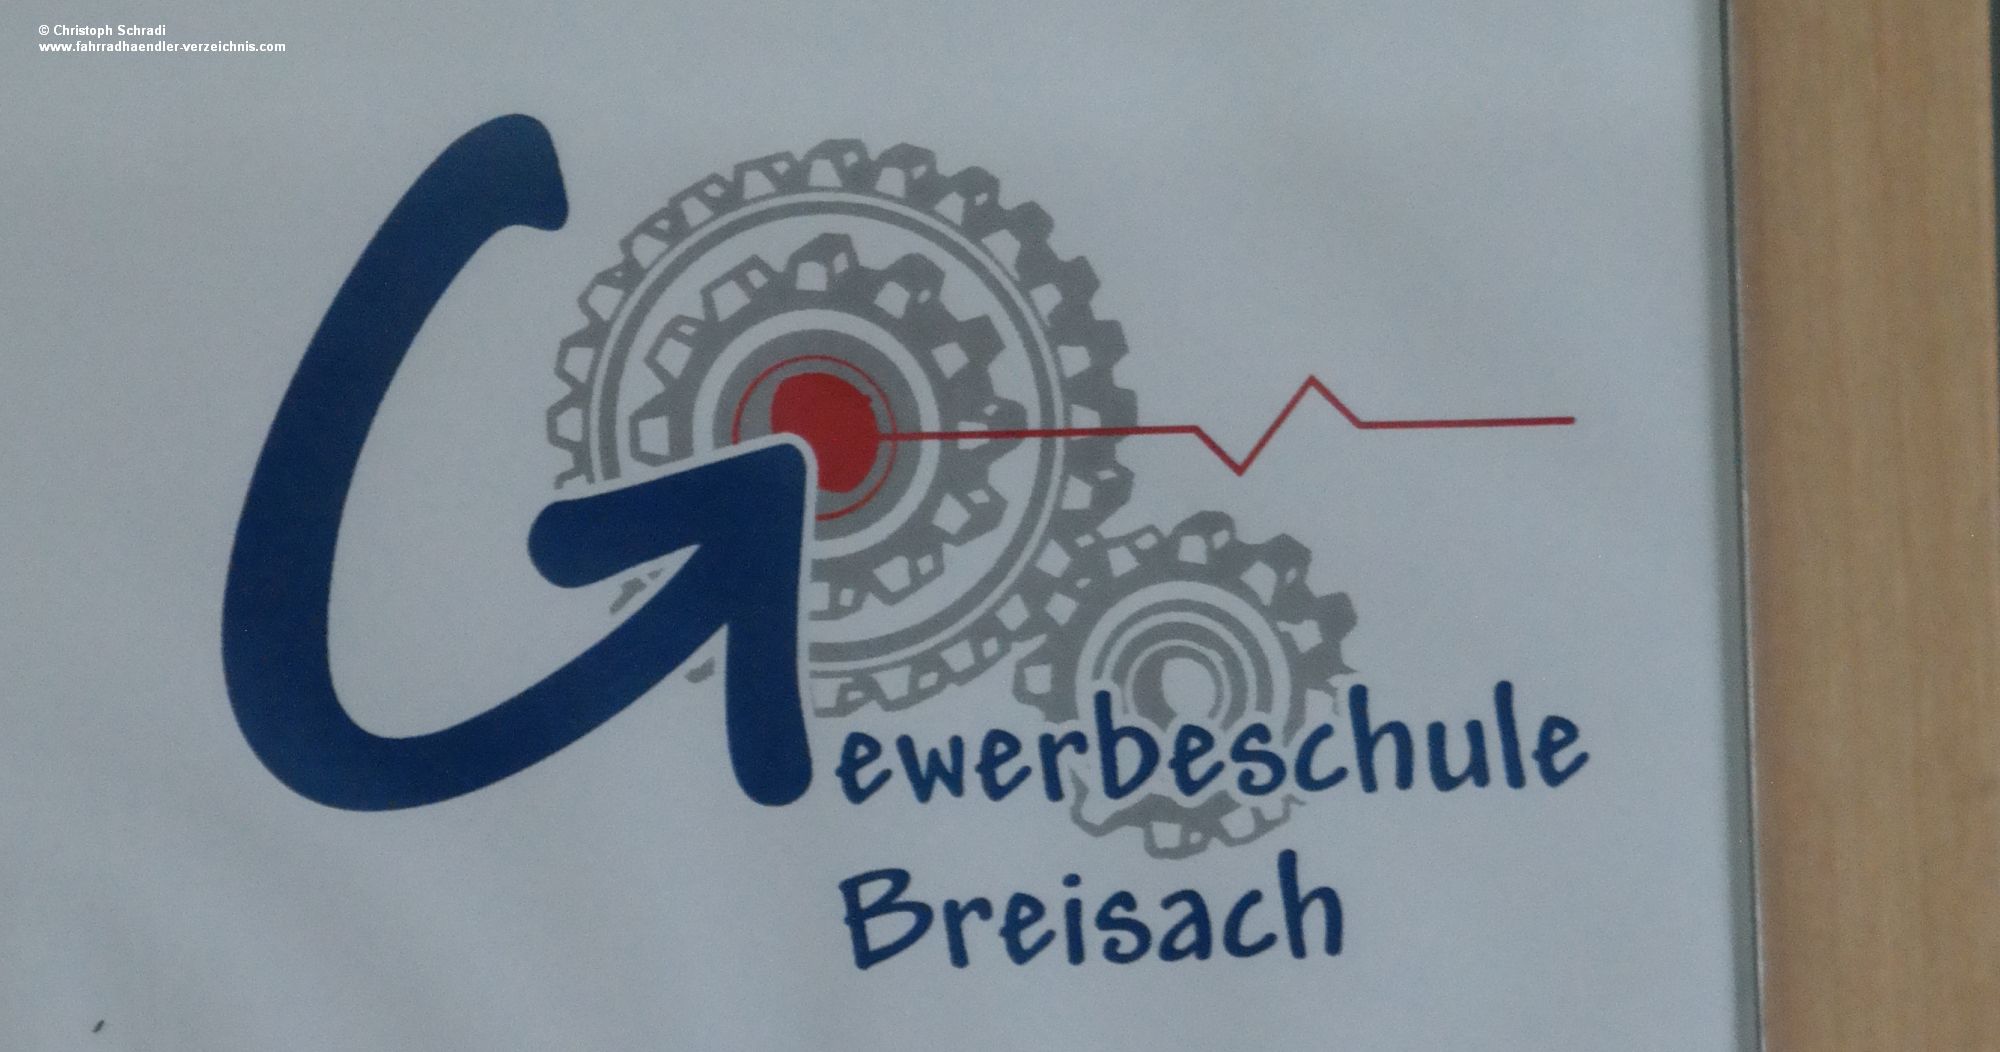 Das Logo der Gewerbeschule Breisach kommt nicht von ungefähr - eng verzahnt mit dem Ausbildungsbetrieb lernen angehende Zweiradmechatroniker hier alles wichtige in der Theroie